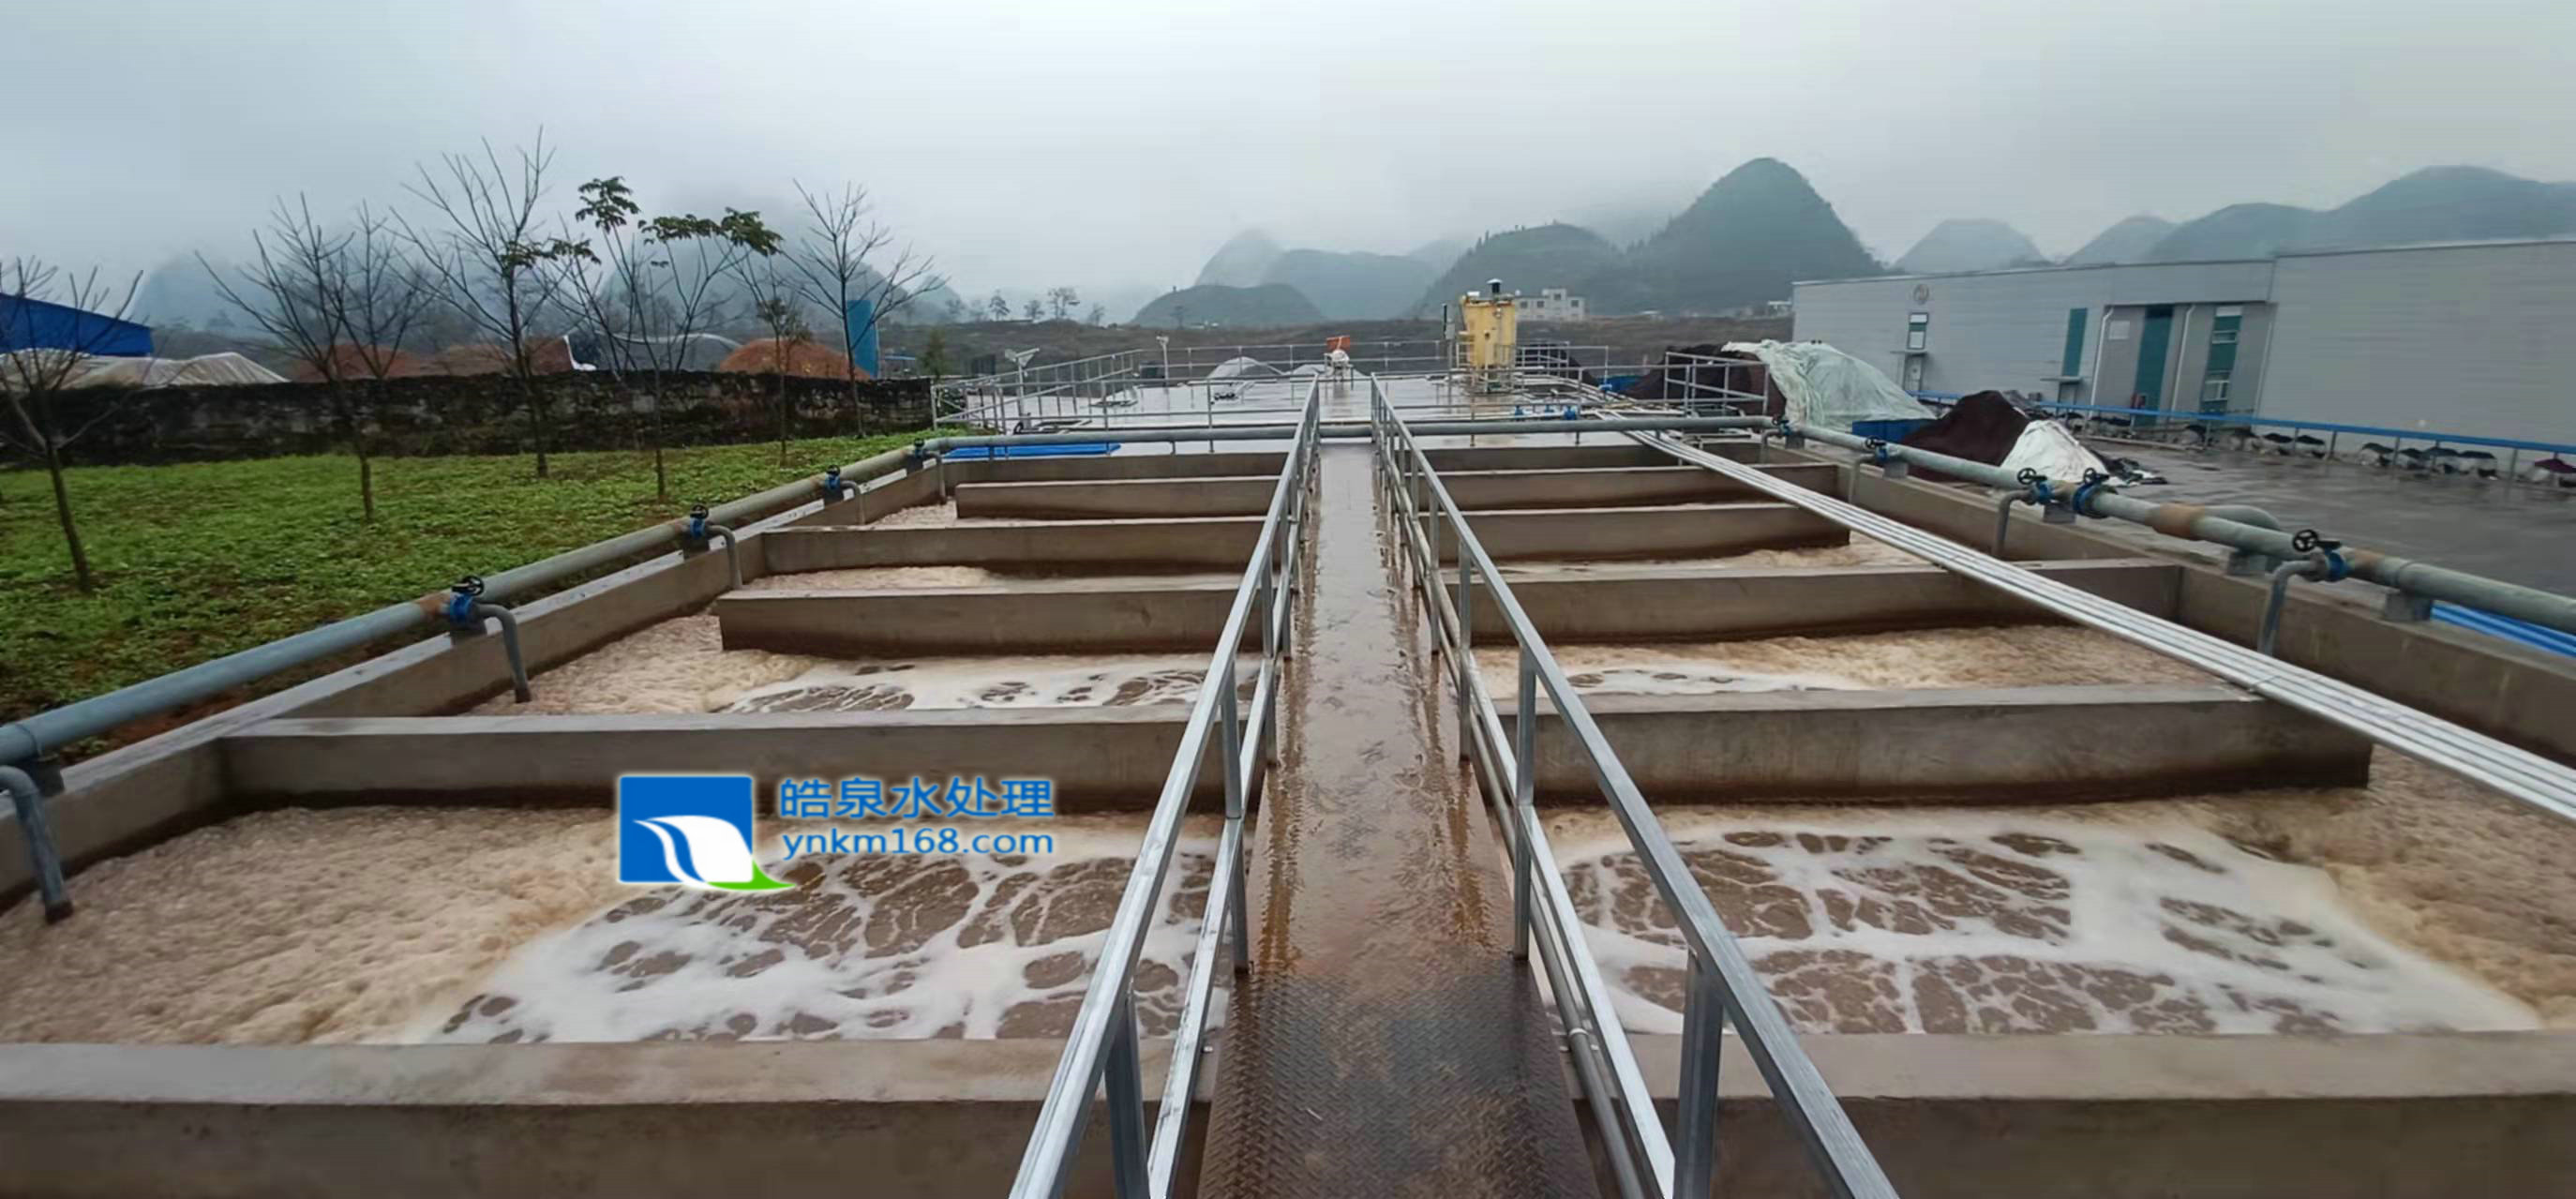 贵州高浓度COD污水废水处理系统调试投入使用